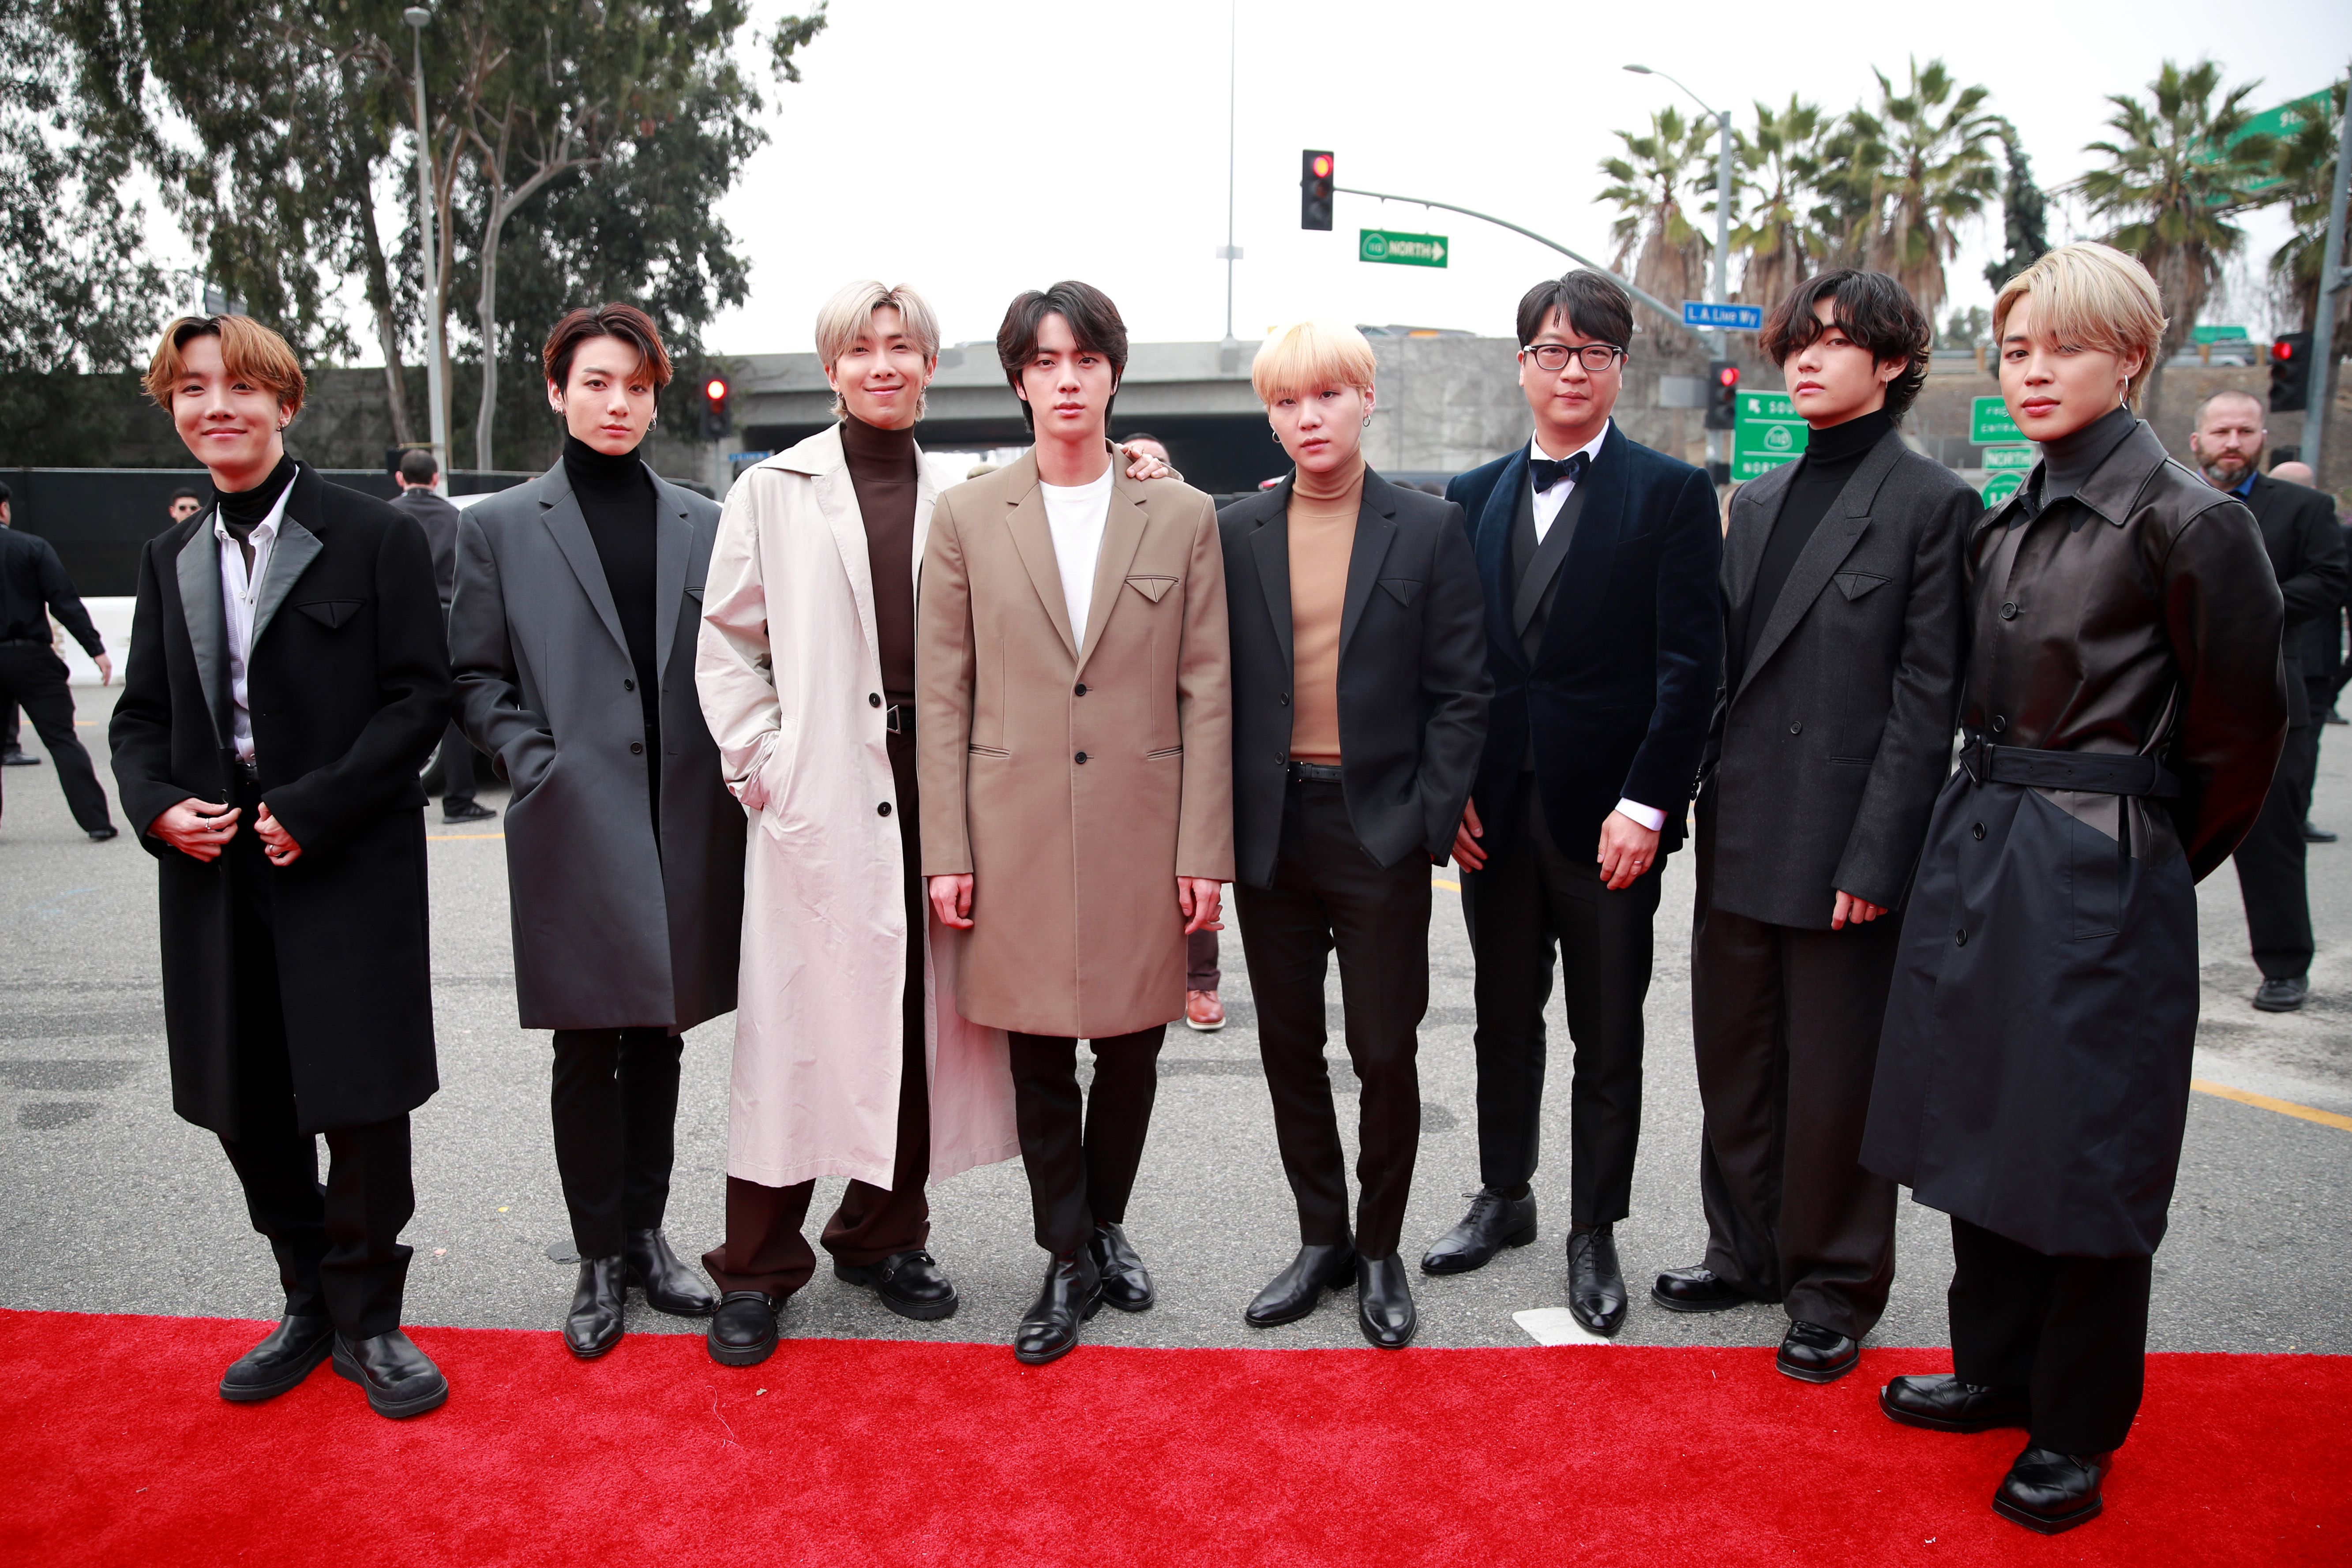 BTS Has Great Grammys 2020 Outfits - See V, RM, Suga, Jungkook